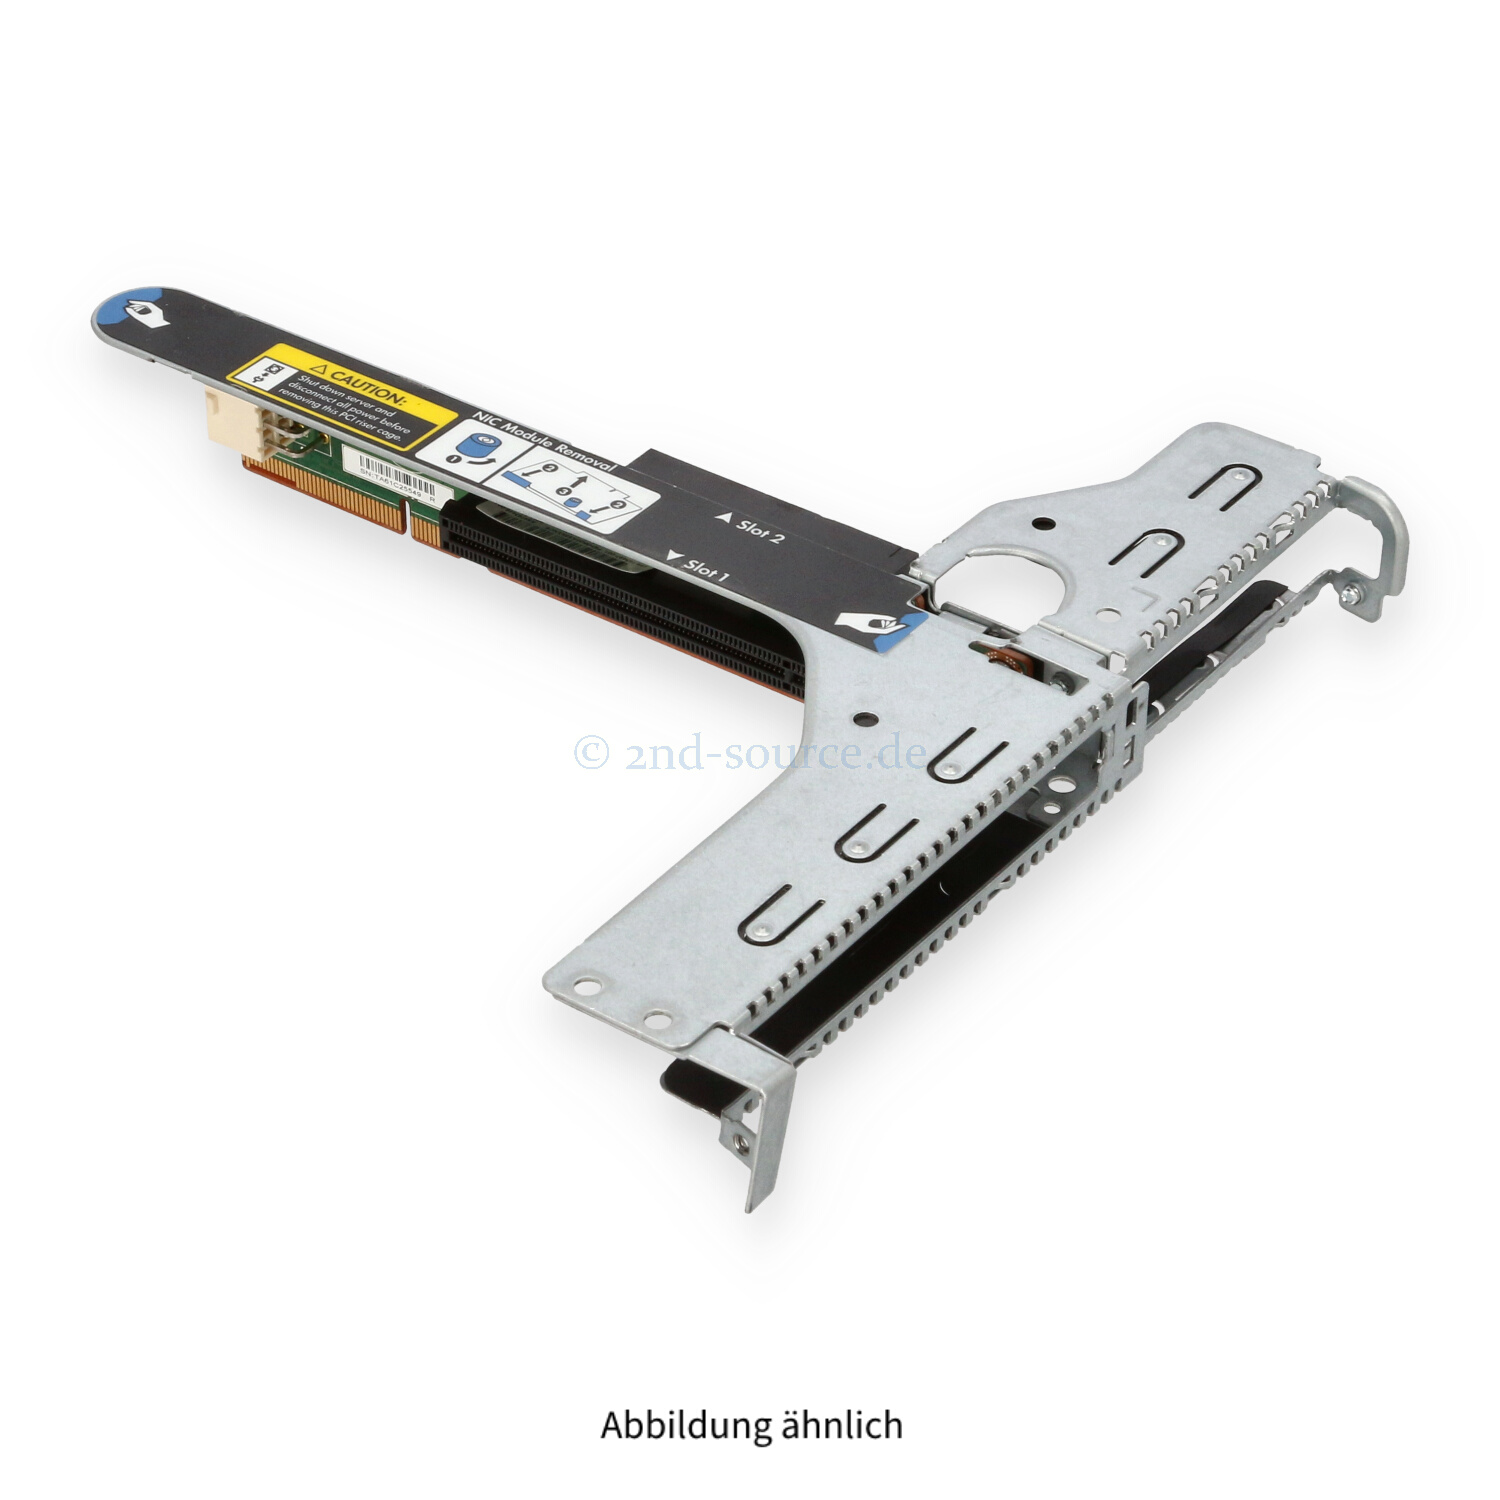 HPE 2-Slot PCI Riser Kit DL360/DL380 G9 775421-001 750685-001